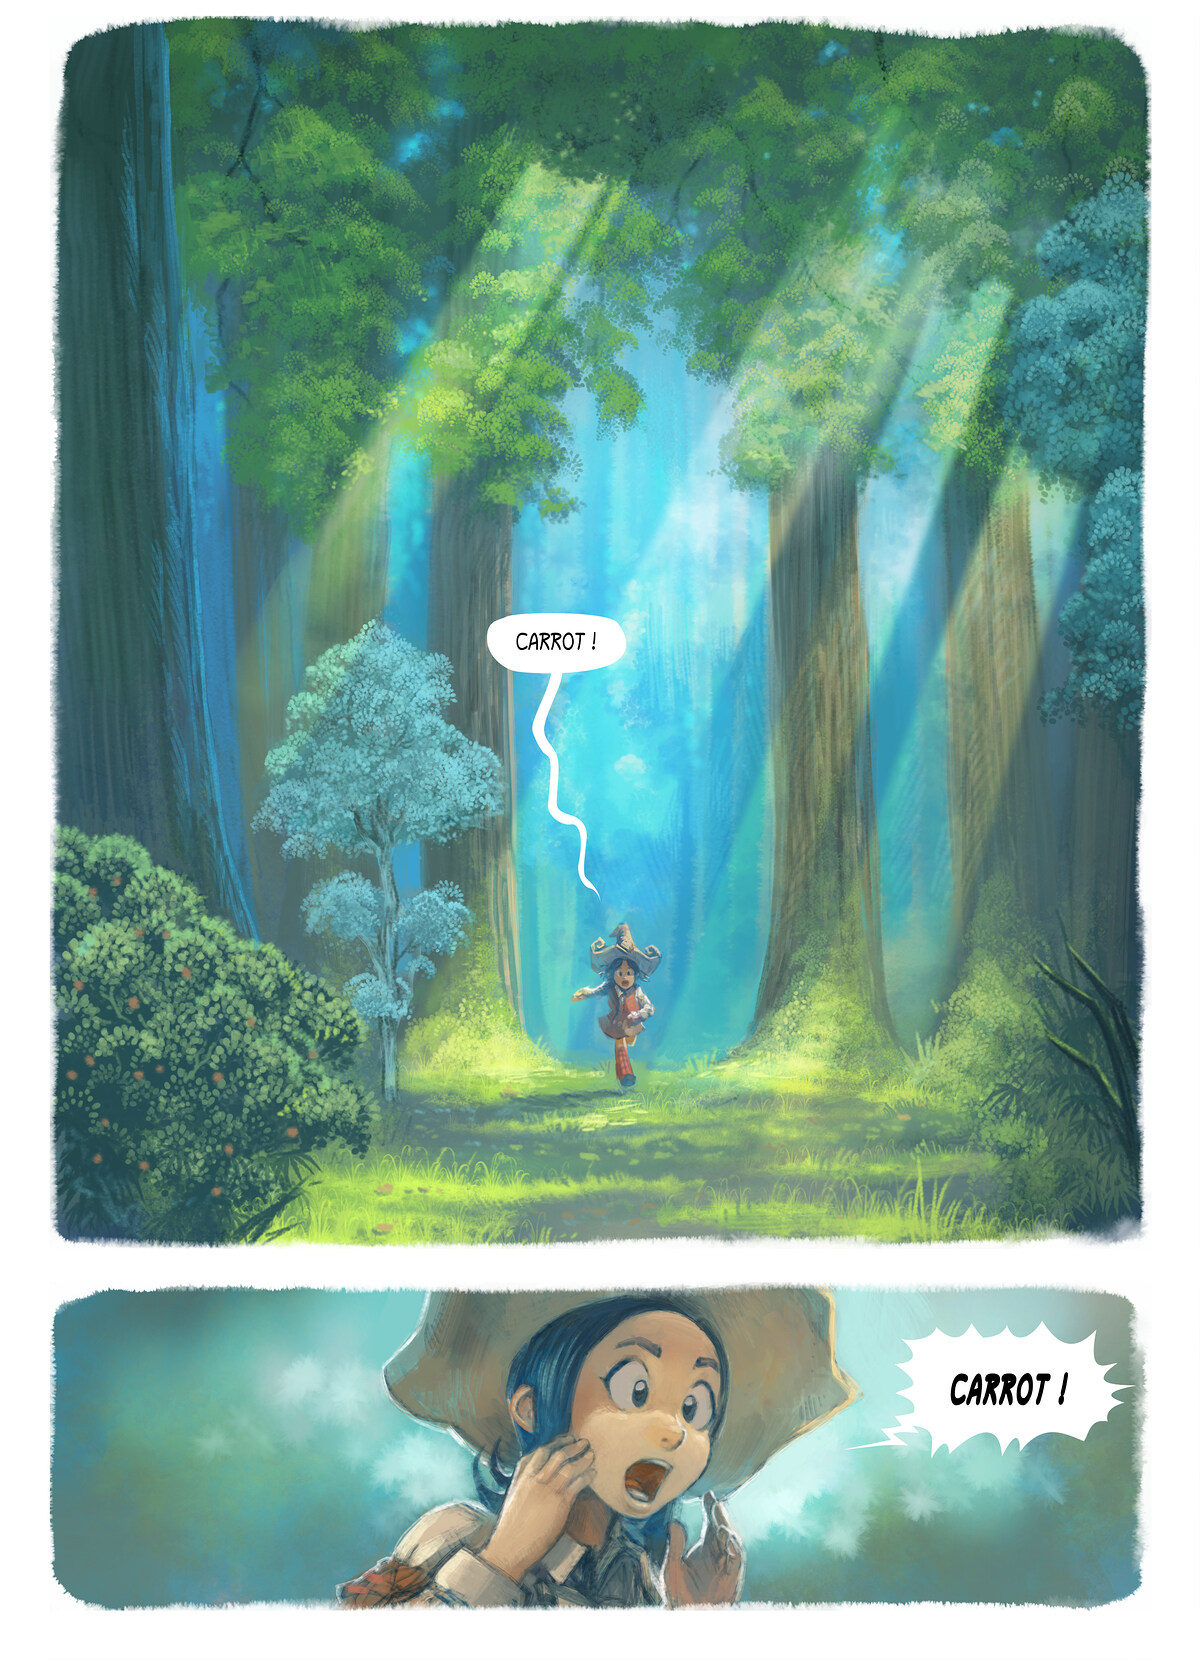 Episodi 7: El desig, Page 1